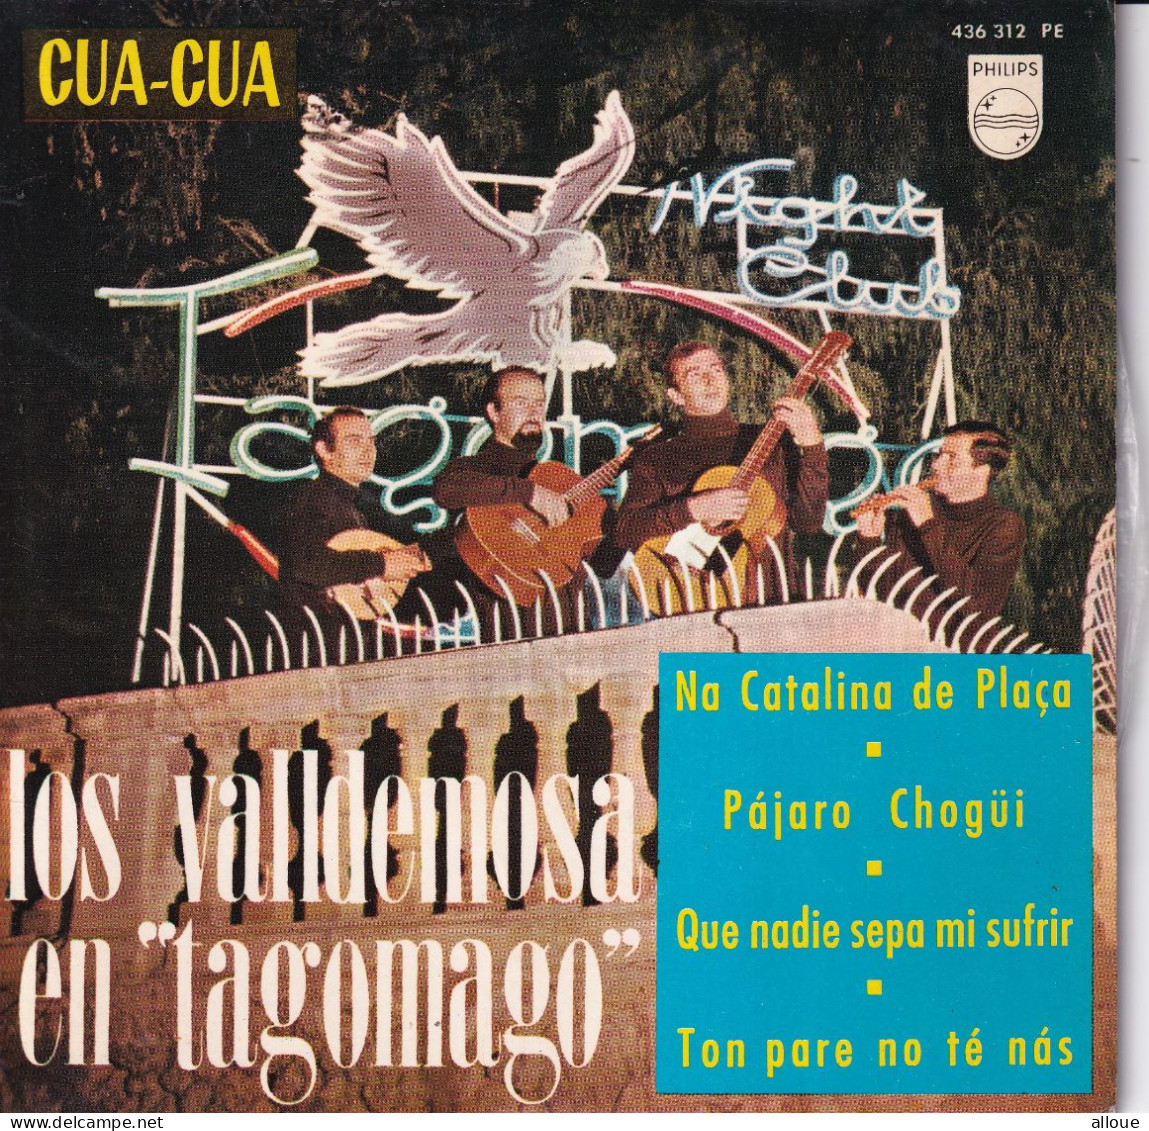 LOS VALLDEMOSA EN "TAGOMAGO" - ESPAGNE EP - Na Catalina De Plaça + 3 - Otros - Canción Española